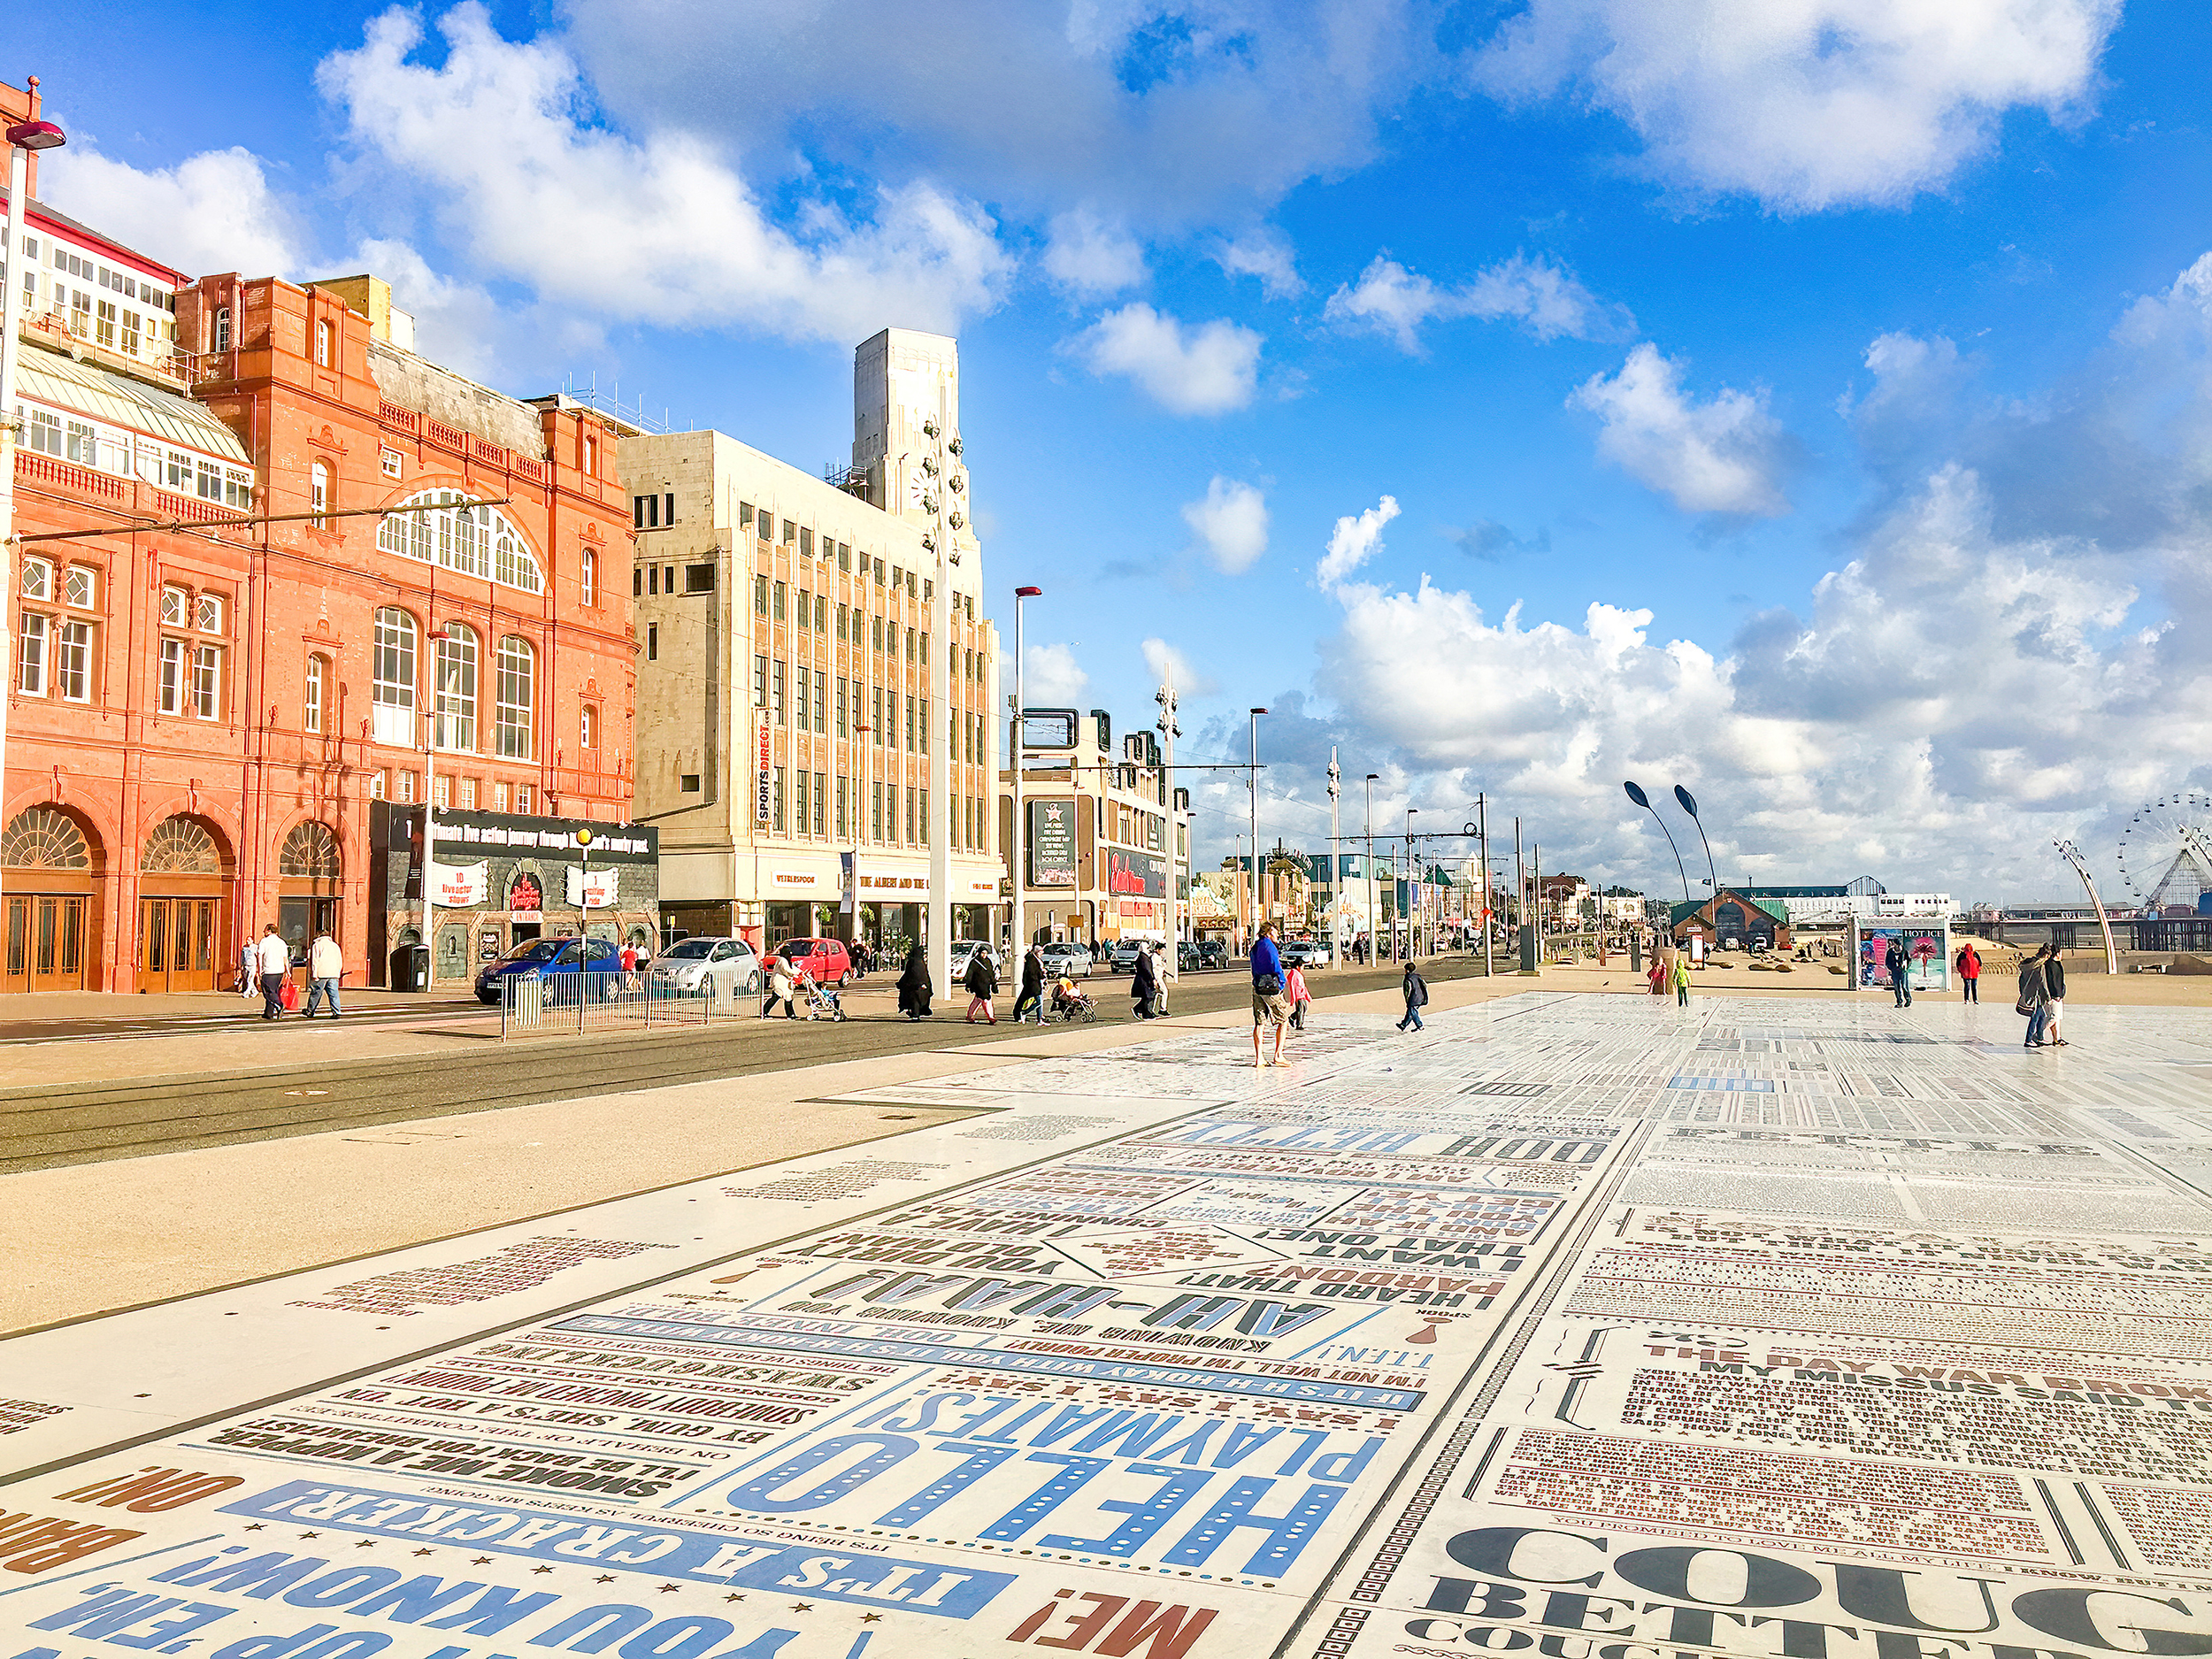 Iconic places UK Blackpool promenade England United Kingdom Jul 2015 01